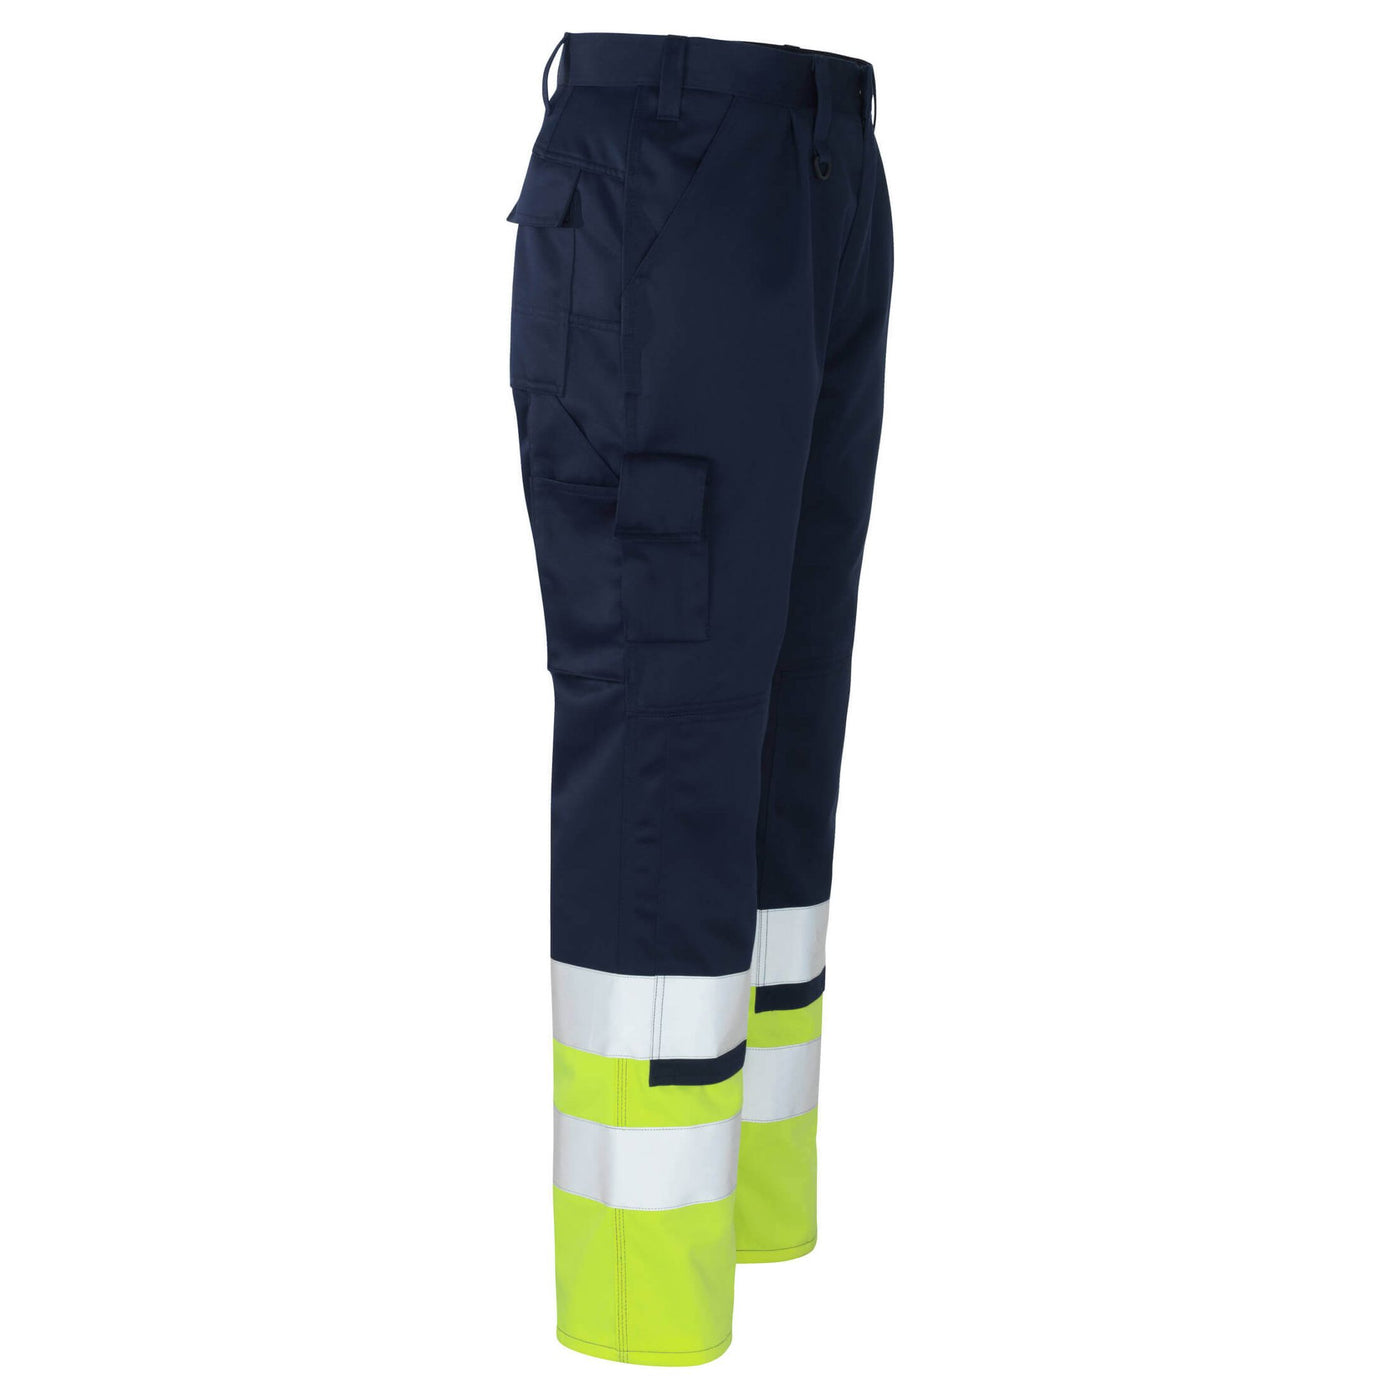 Mascot Patos Hi-Vis Work Trousers 12379-430 Left #colour_navy-blue-hi-vis-yellow